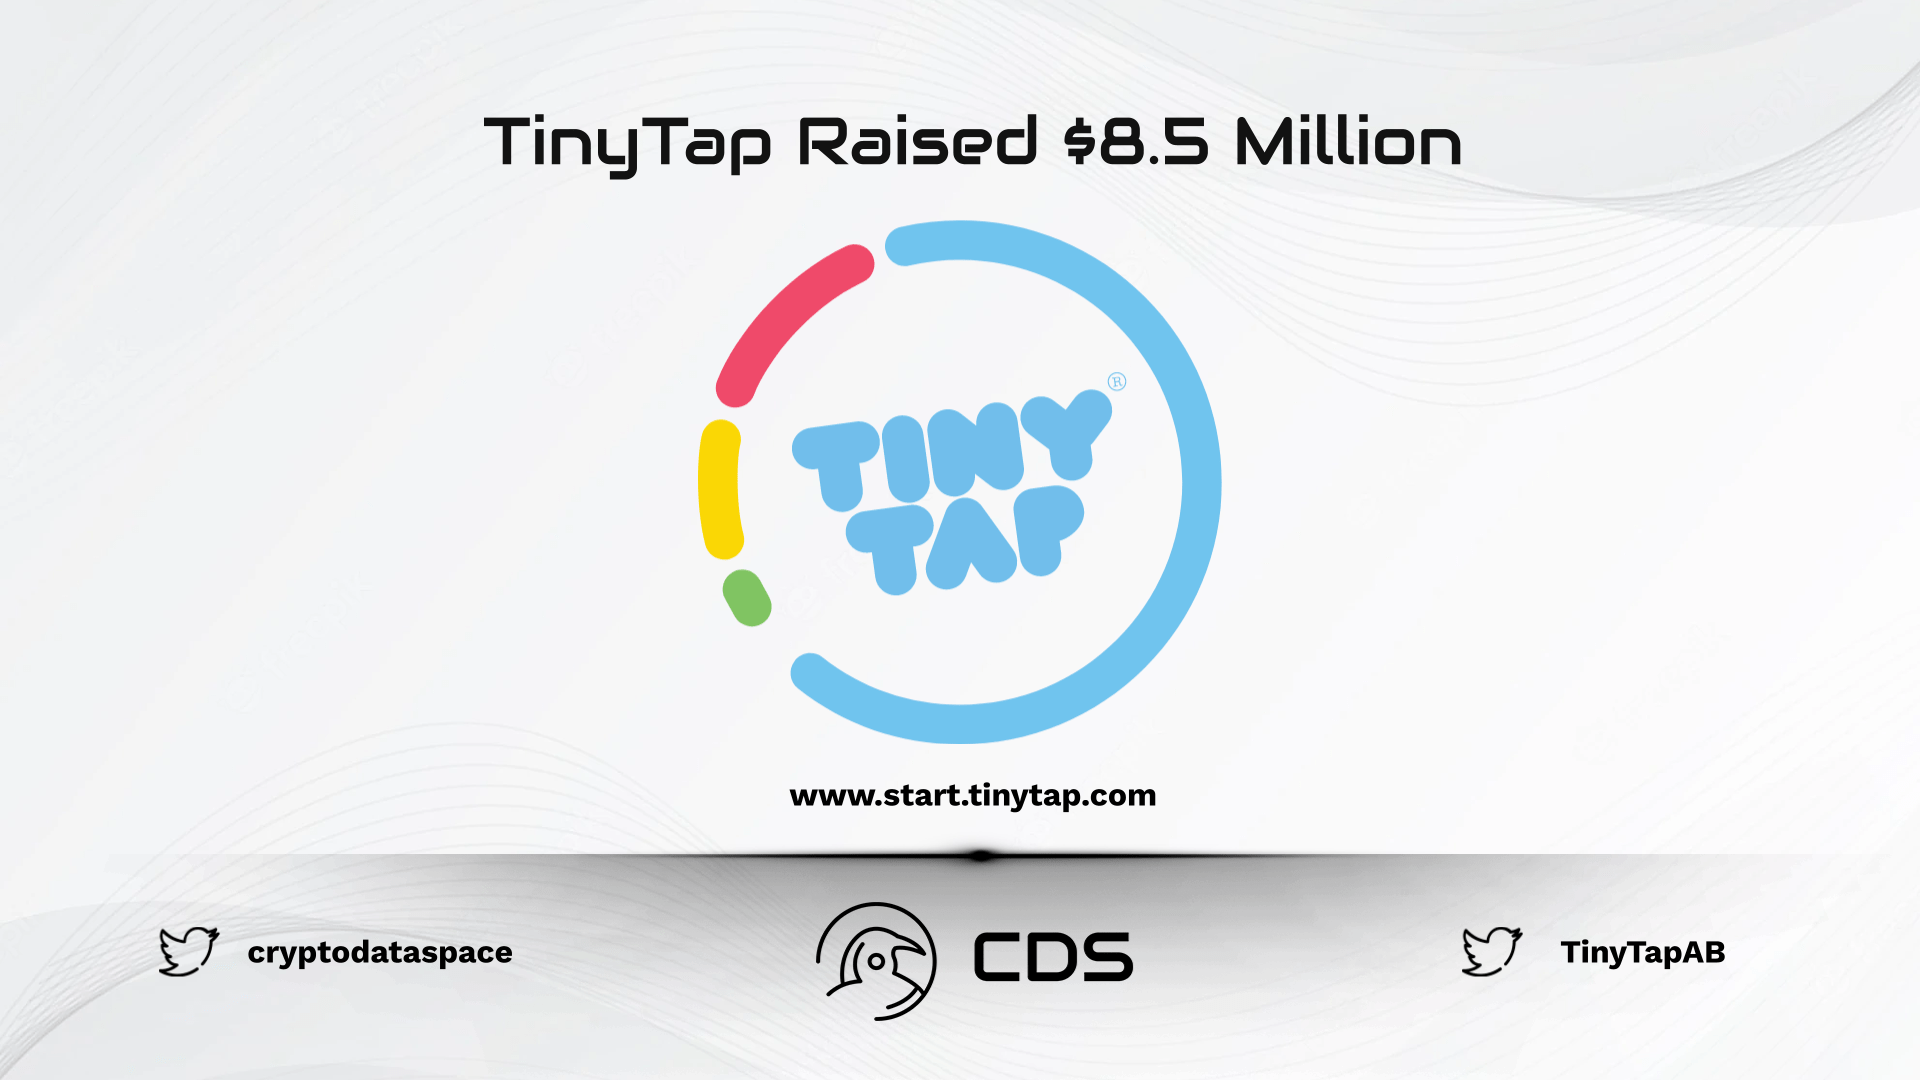 TinyTap Raised $8.5 Million